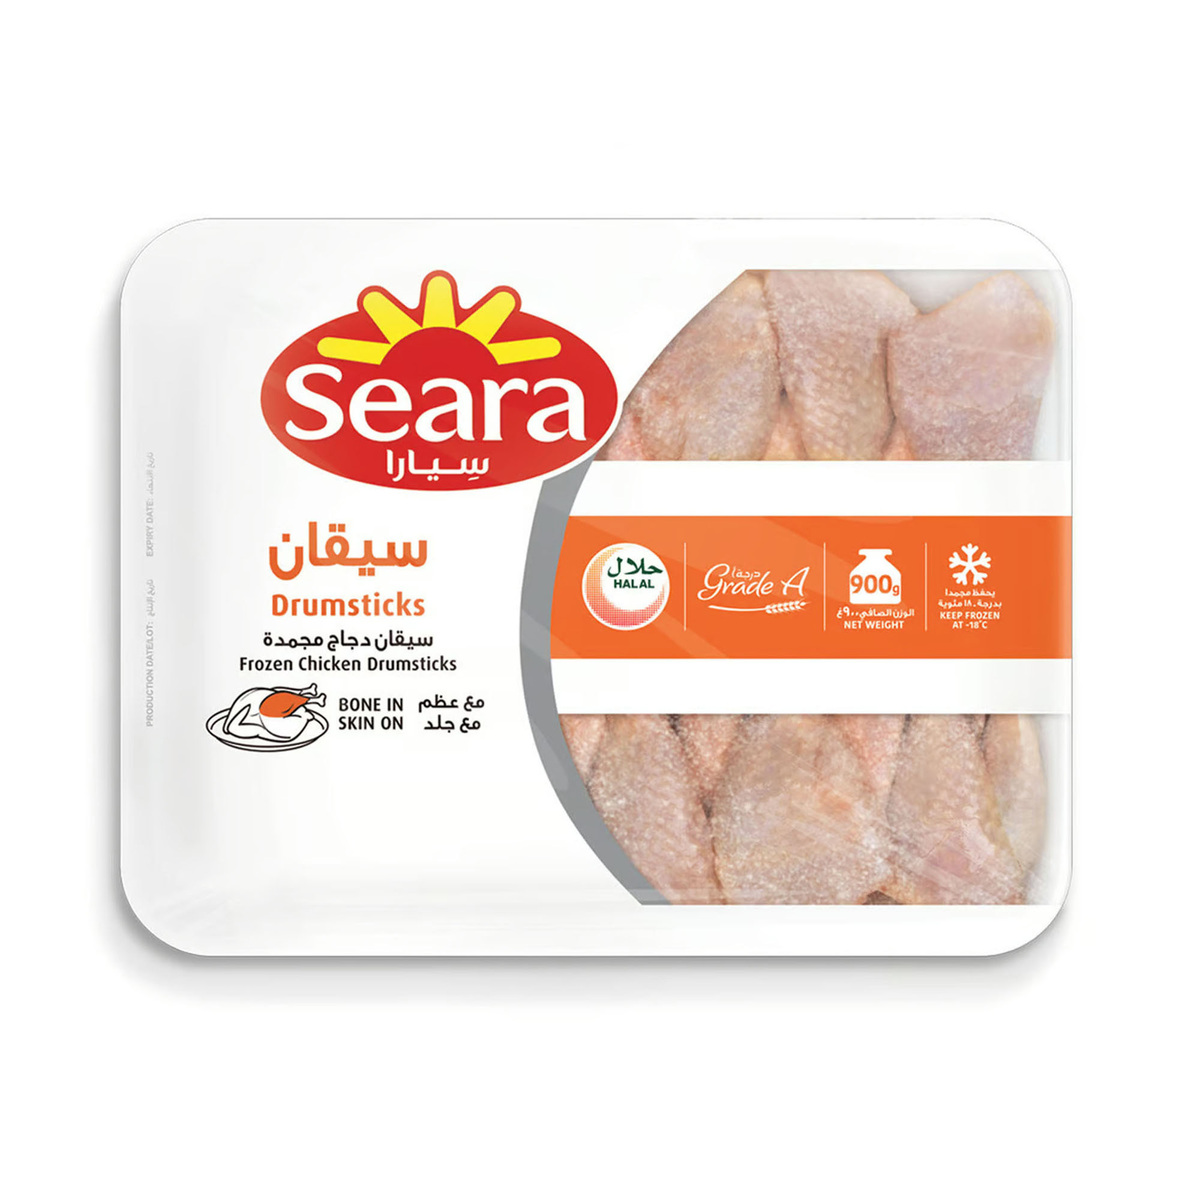 Seara Frozen Chicken Drumstick Value Pack 900 g